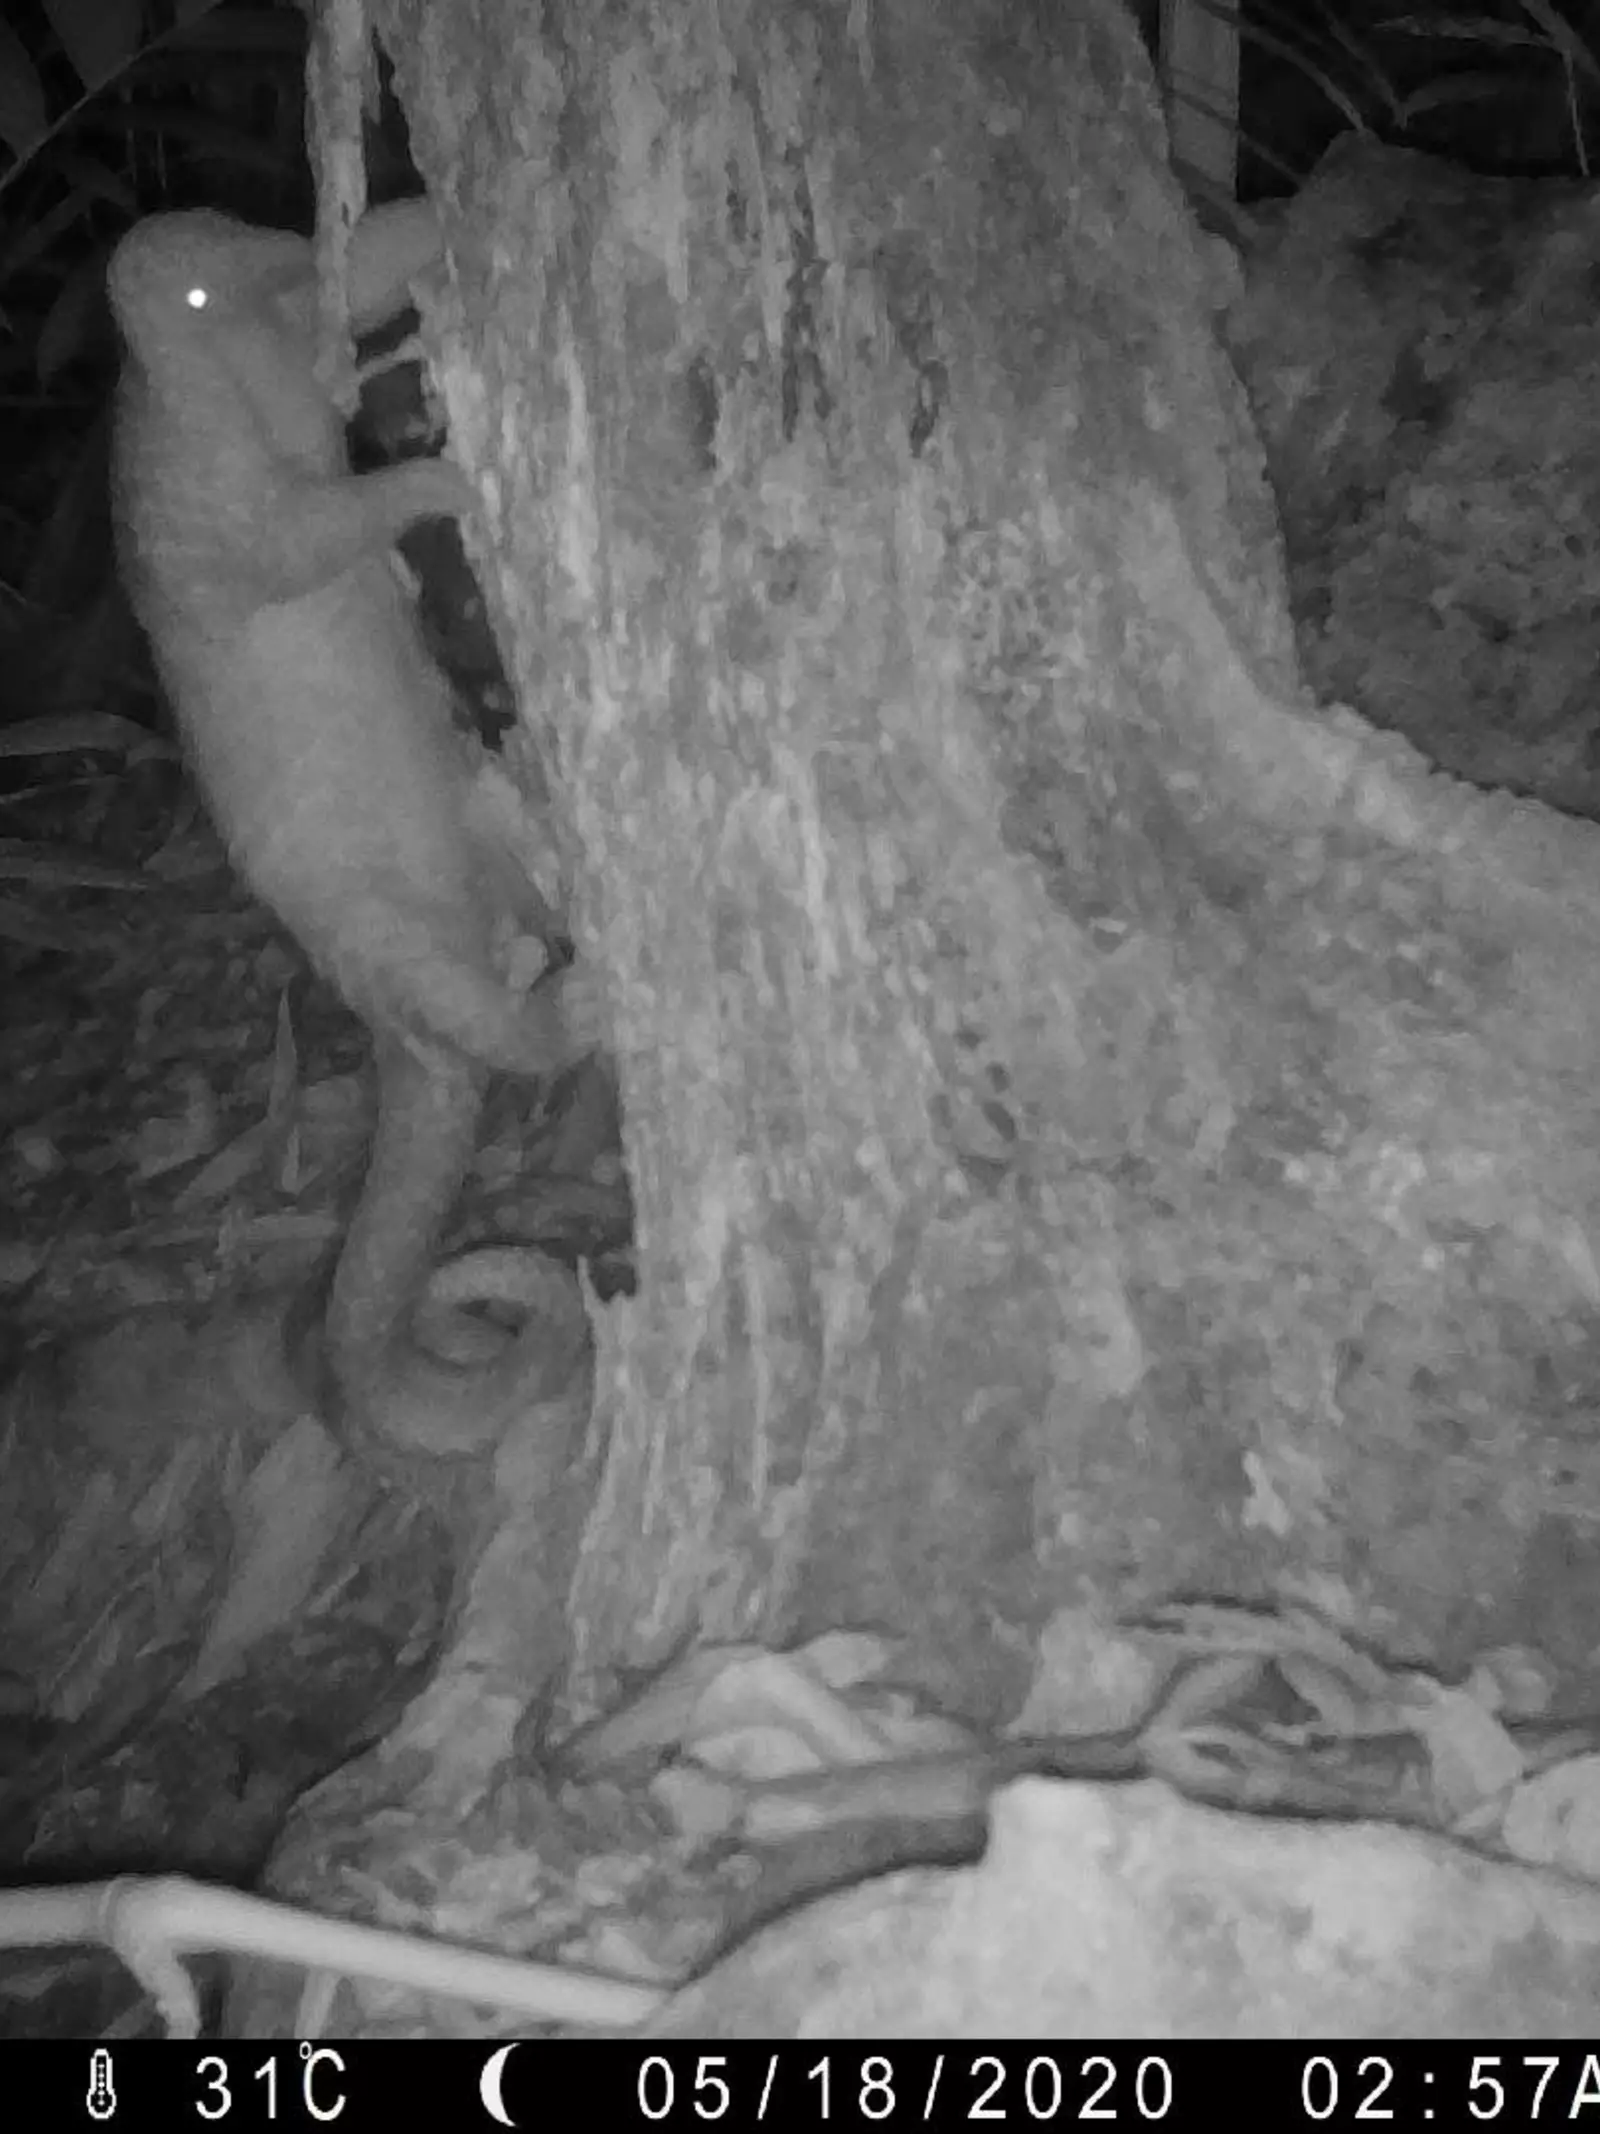 Pangolin caught on camera trap at night